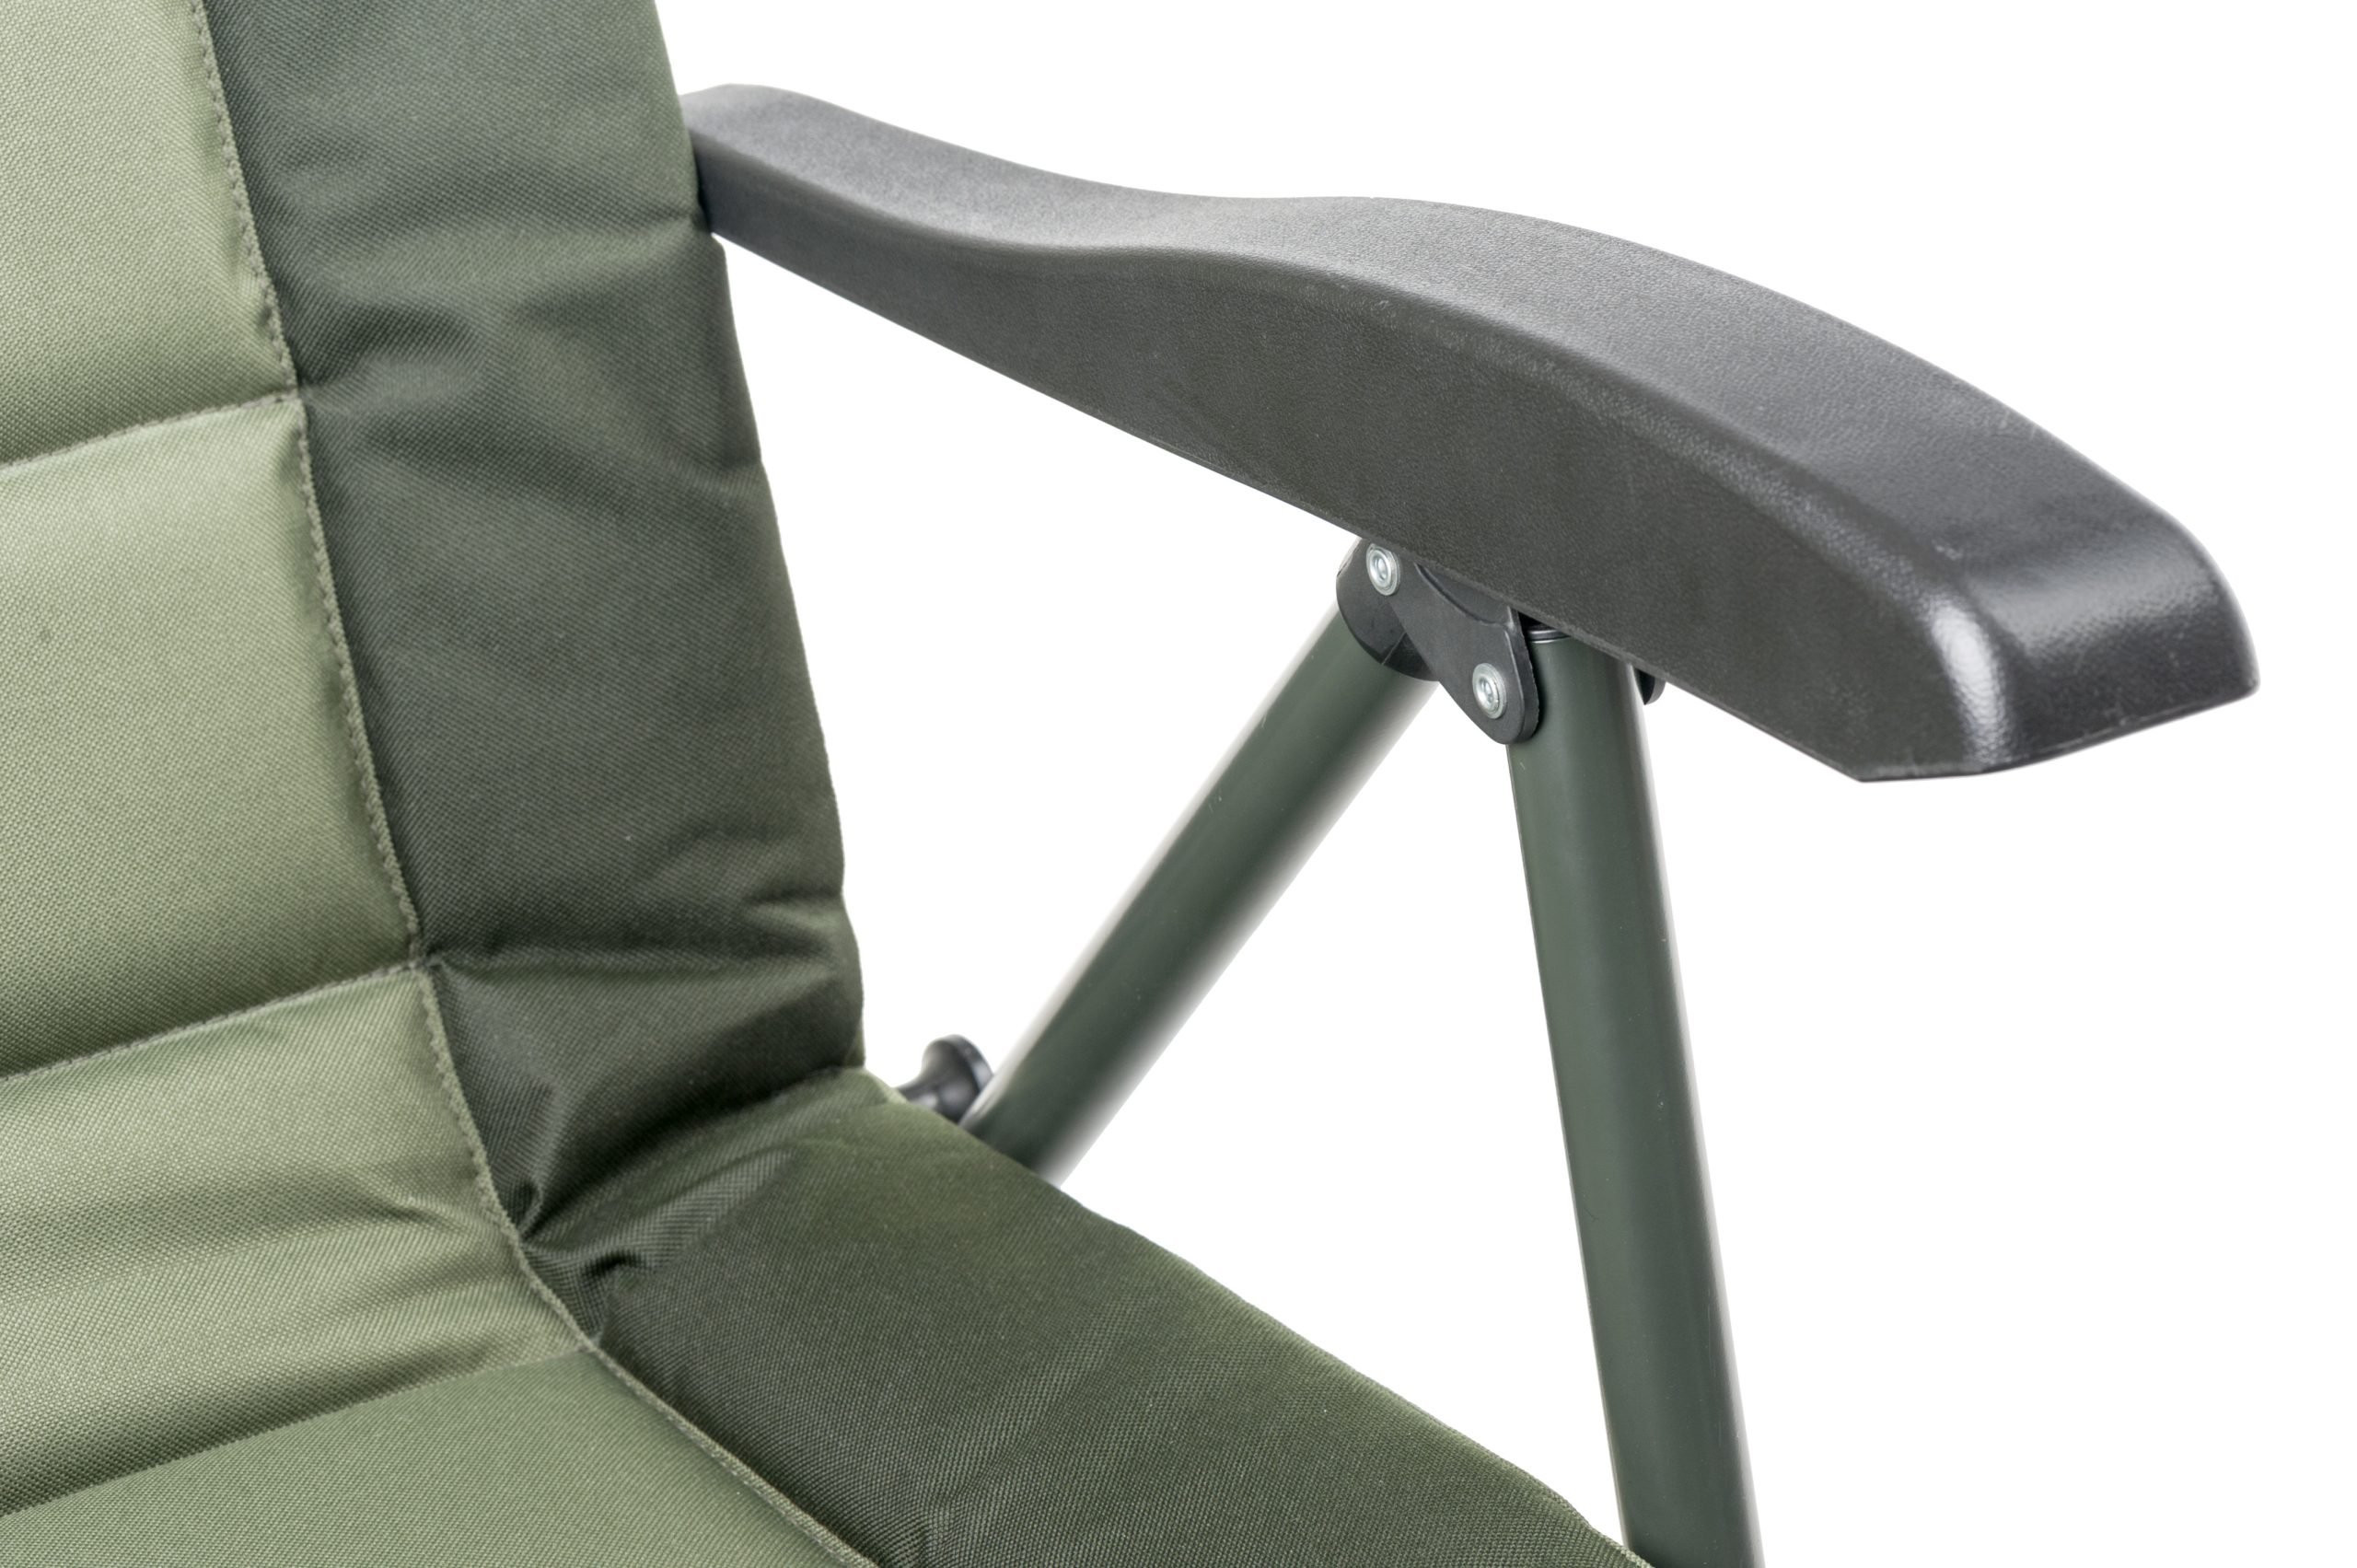 Miardi-Chair-Premium-Quattro-CarpStore.pl-Miedzynarodowy-Sklep-dla-Karpiarzy-4